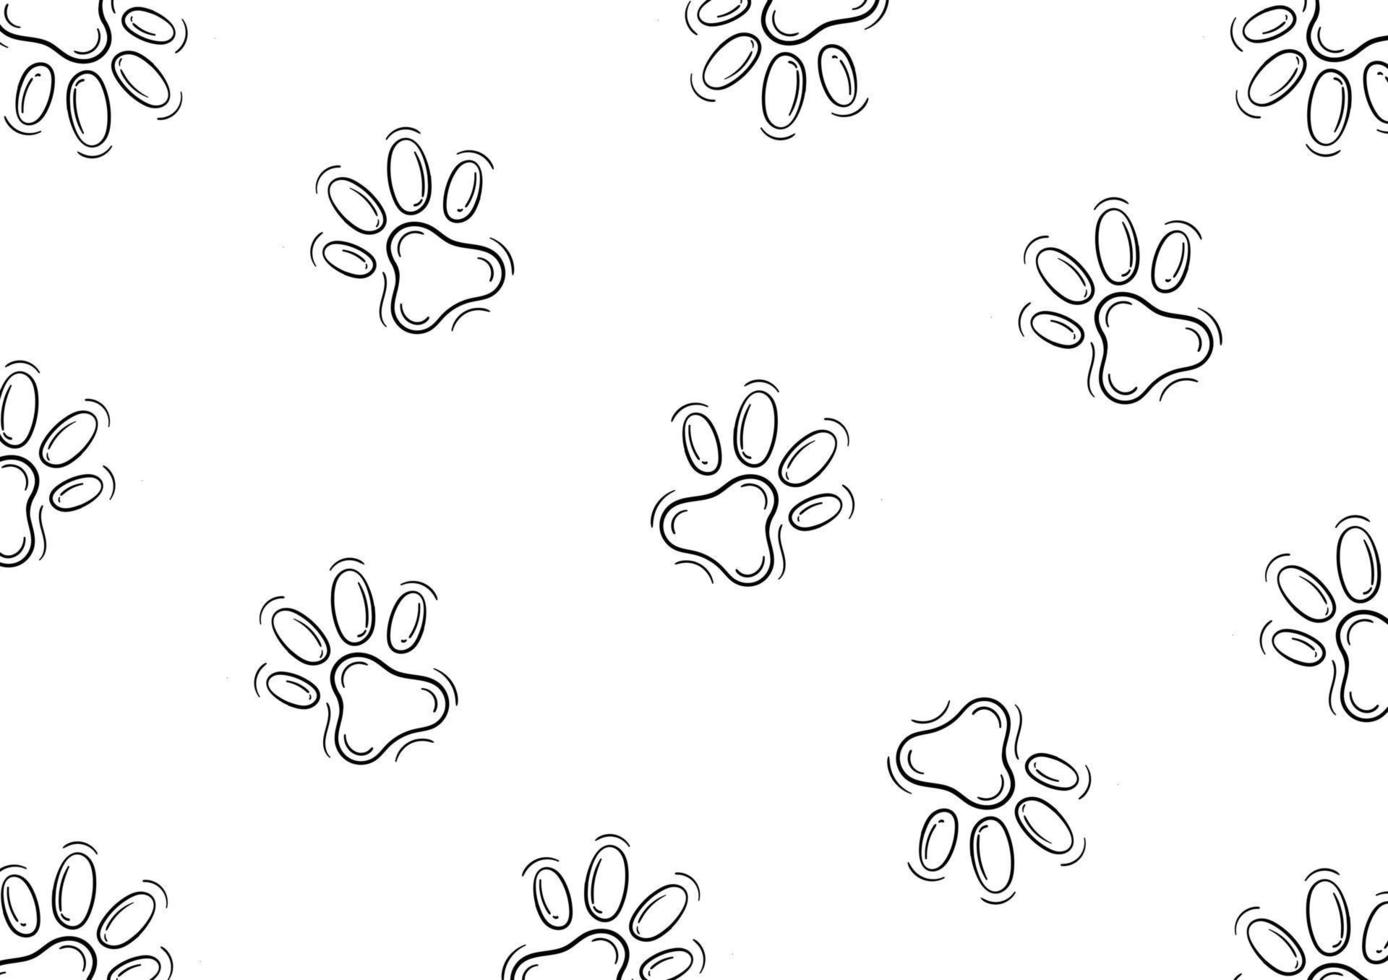 padrão desenhado à mão de pegadas de cachorro ou gato vetor